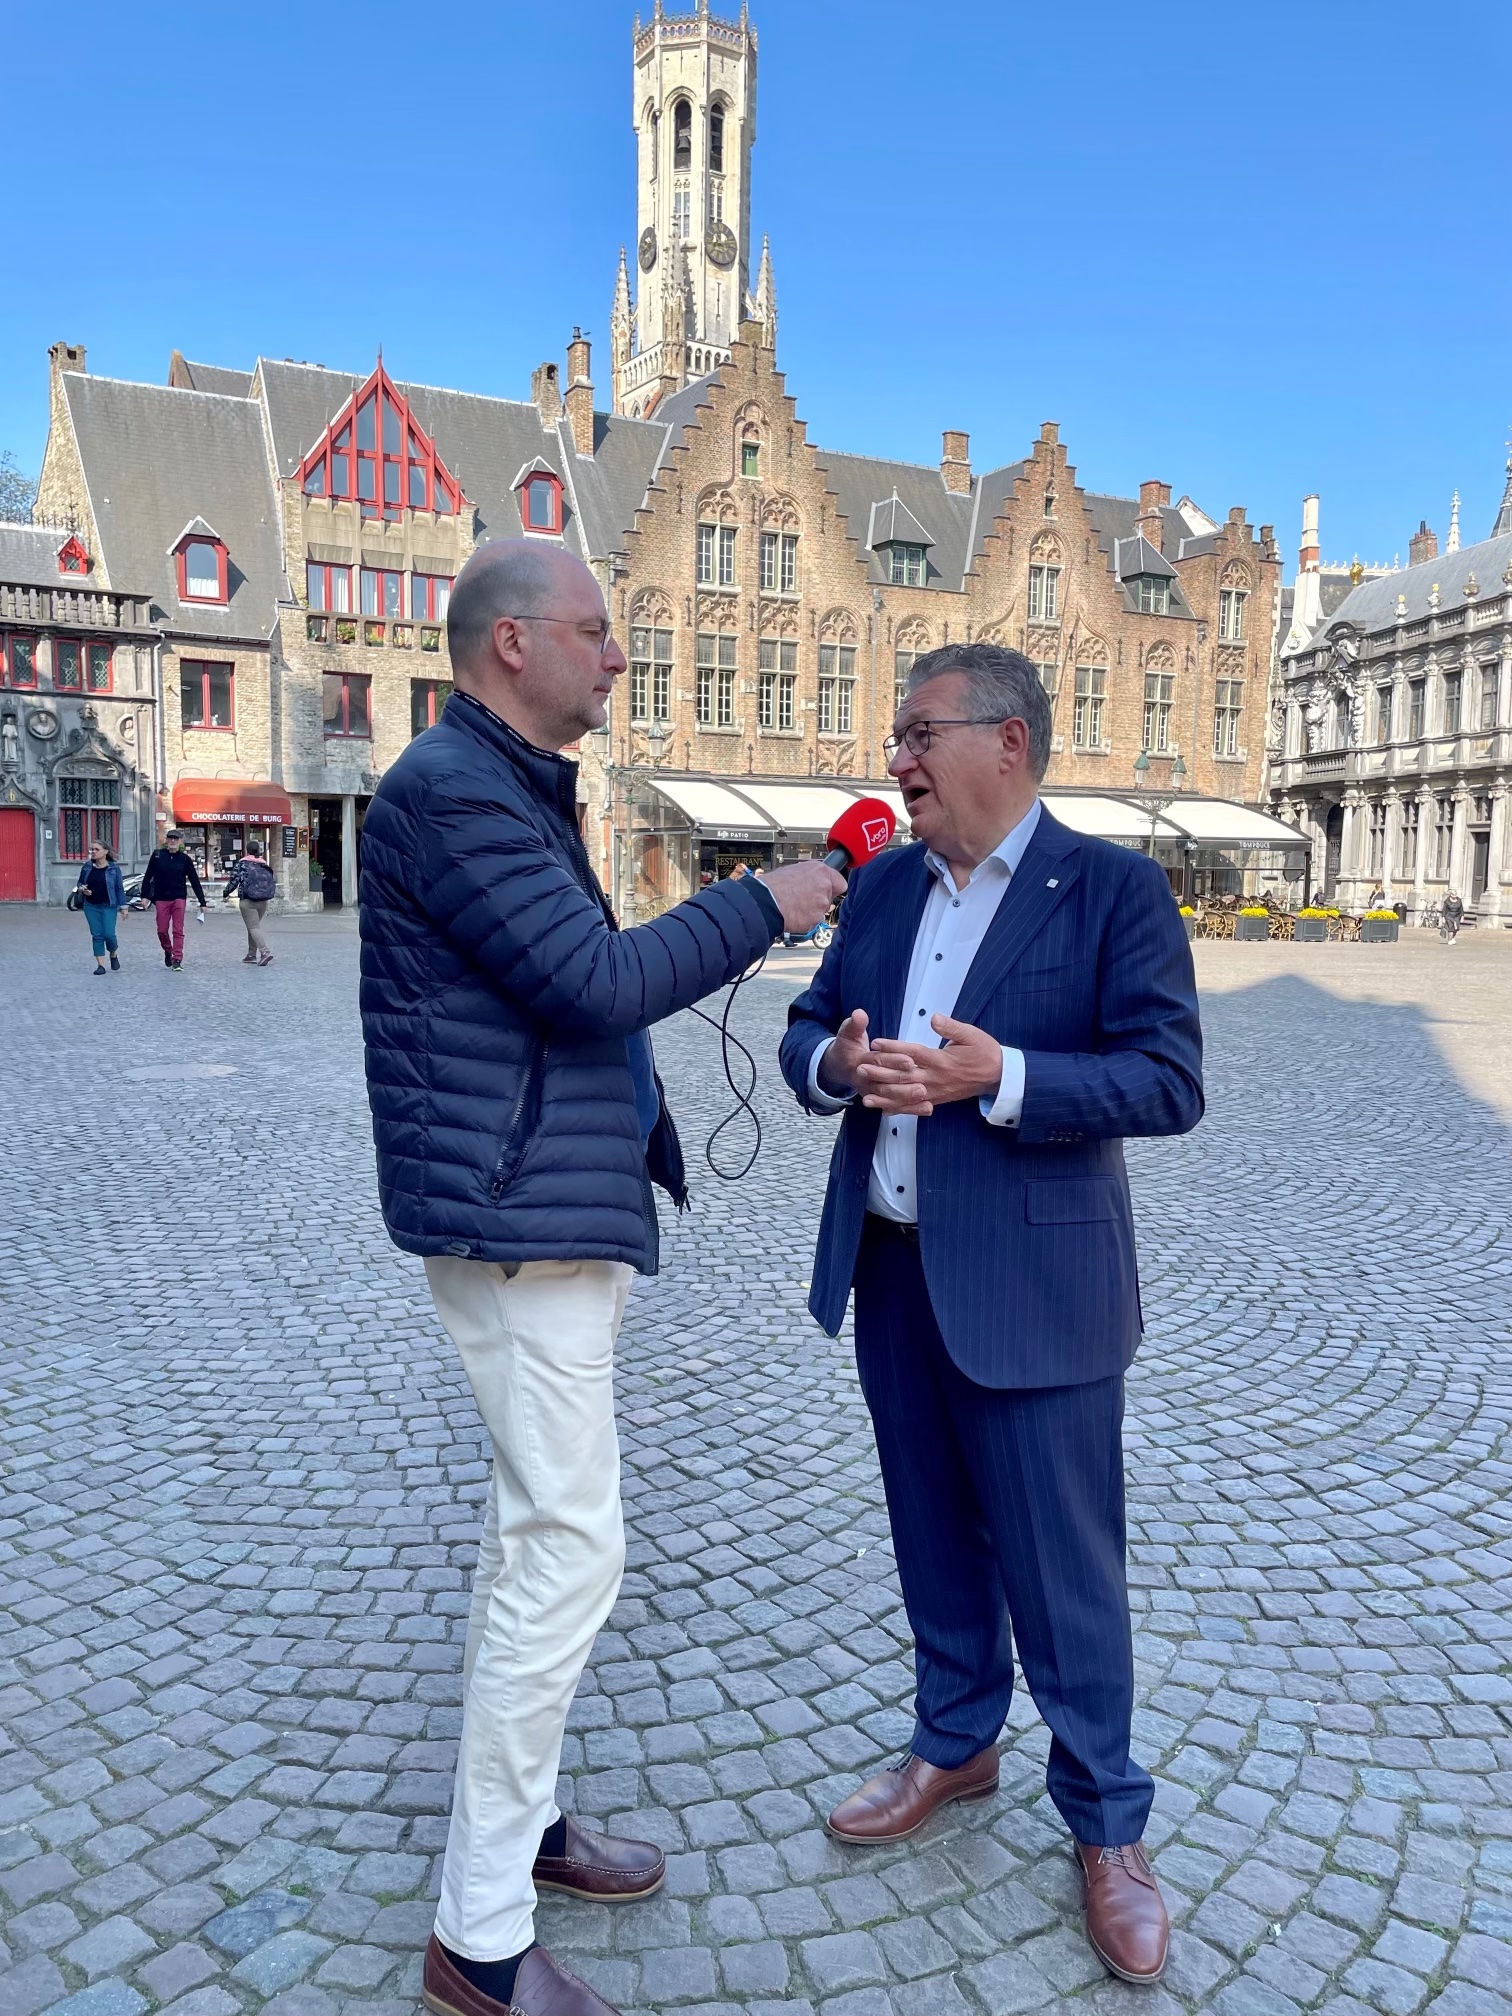 Frederik Thomas en Brugemeester Dirk De fauw op de markt in Brugge.